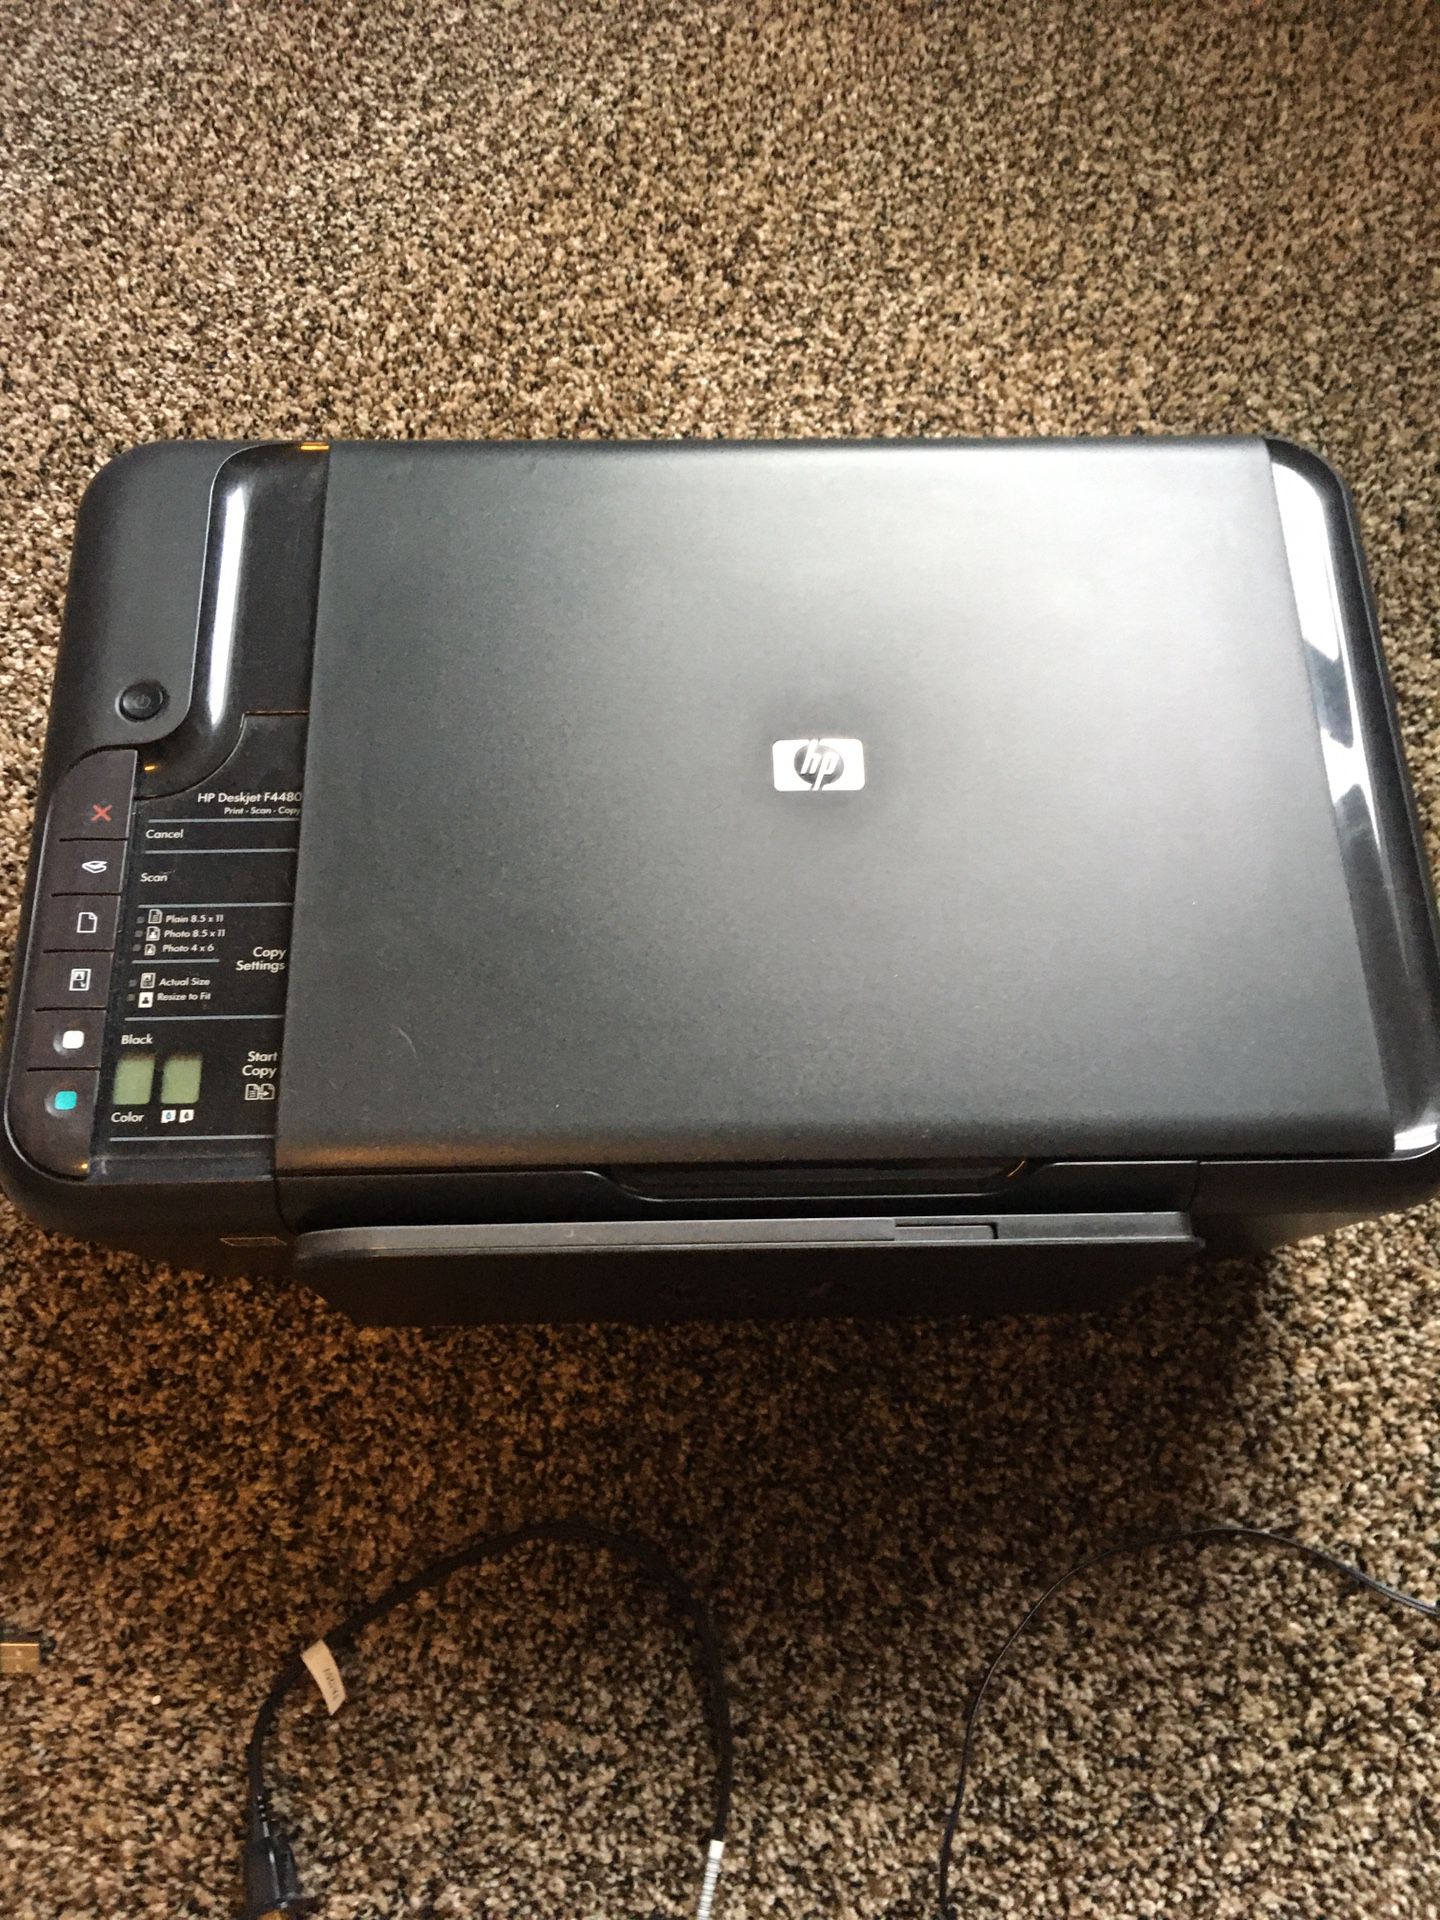 HP Deskjet F4480 Print Scan Copy